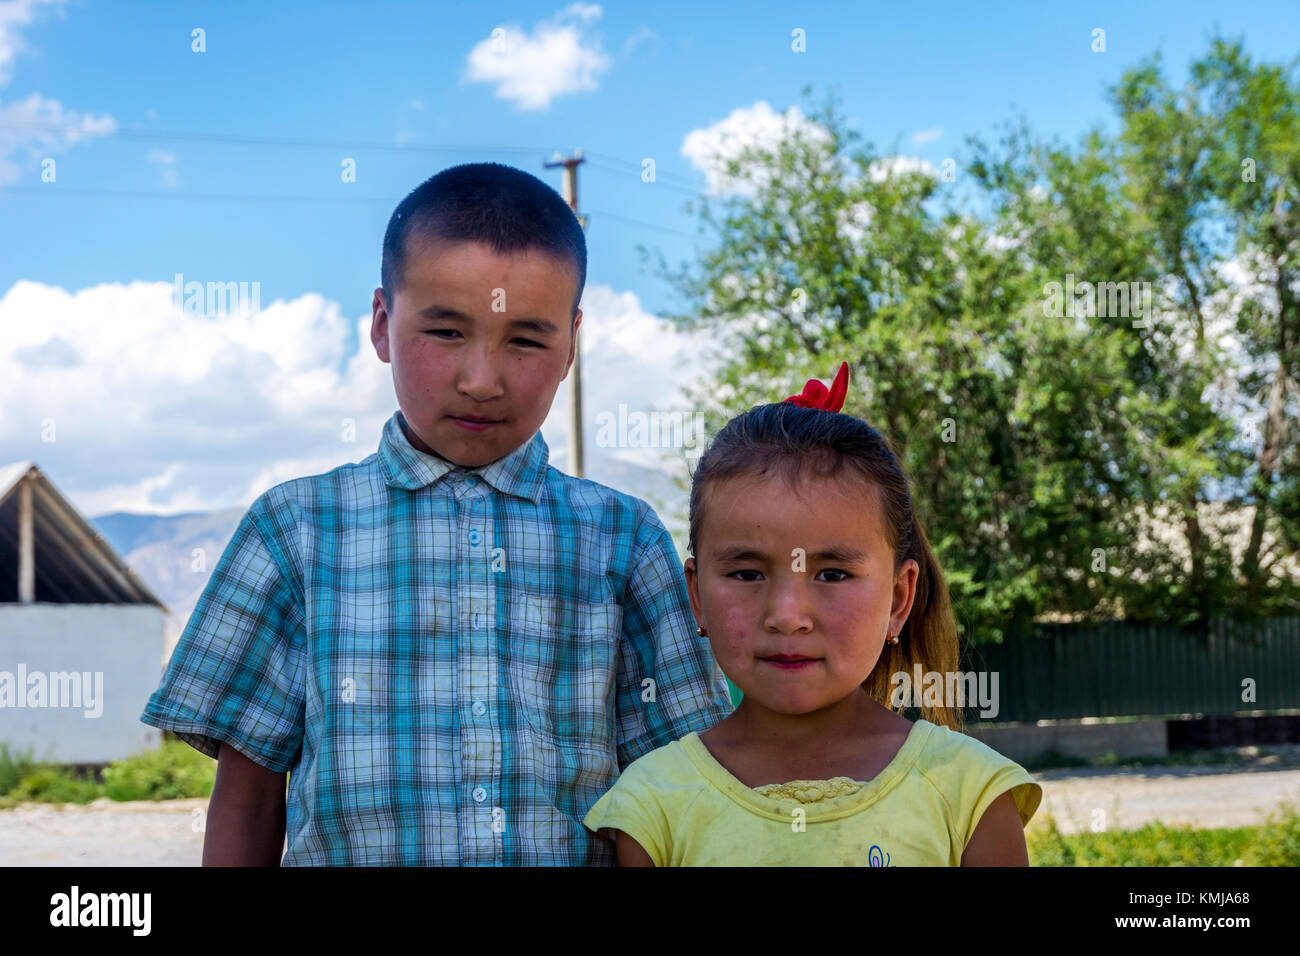 UGUT, Kirgisistan - 16. August: Geschwister, Bruder und eine Schwester mit ernsten Gesichtsausdruck posieren. Ugut ist ein abgelegenes Dorf in Kirgisistan. August 201 Stockfoto